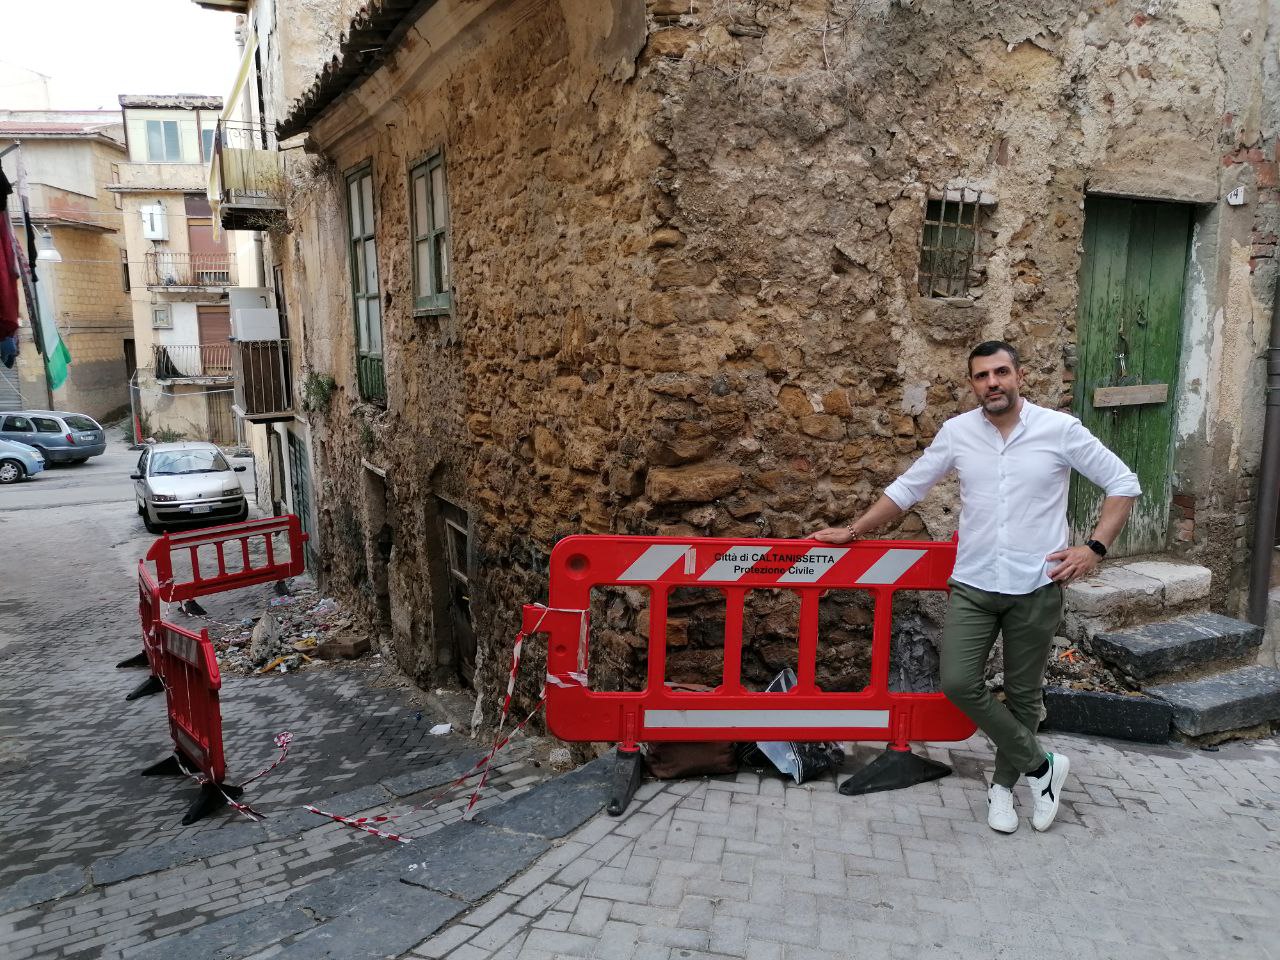 Caltanissetta, Aiello: “Comitati di quartieri storici organizzano eventi ma attorno resta il degrado”